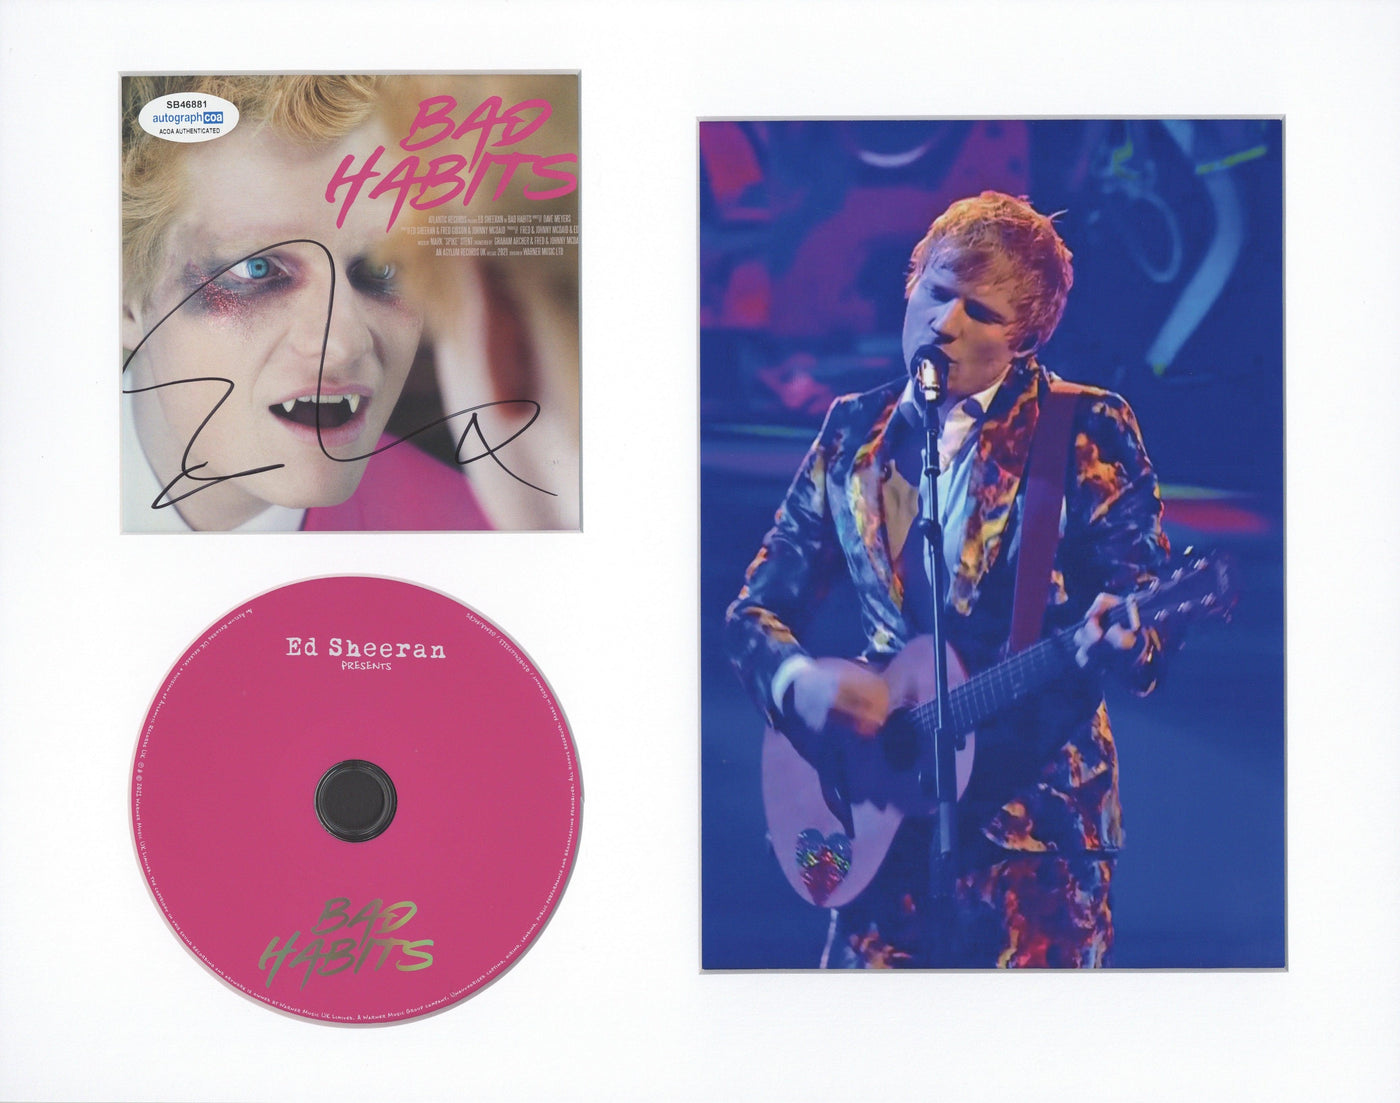 Ed Sheeran Signed Bad Habits CD Cover Framed ACOA